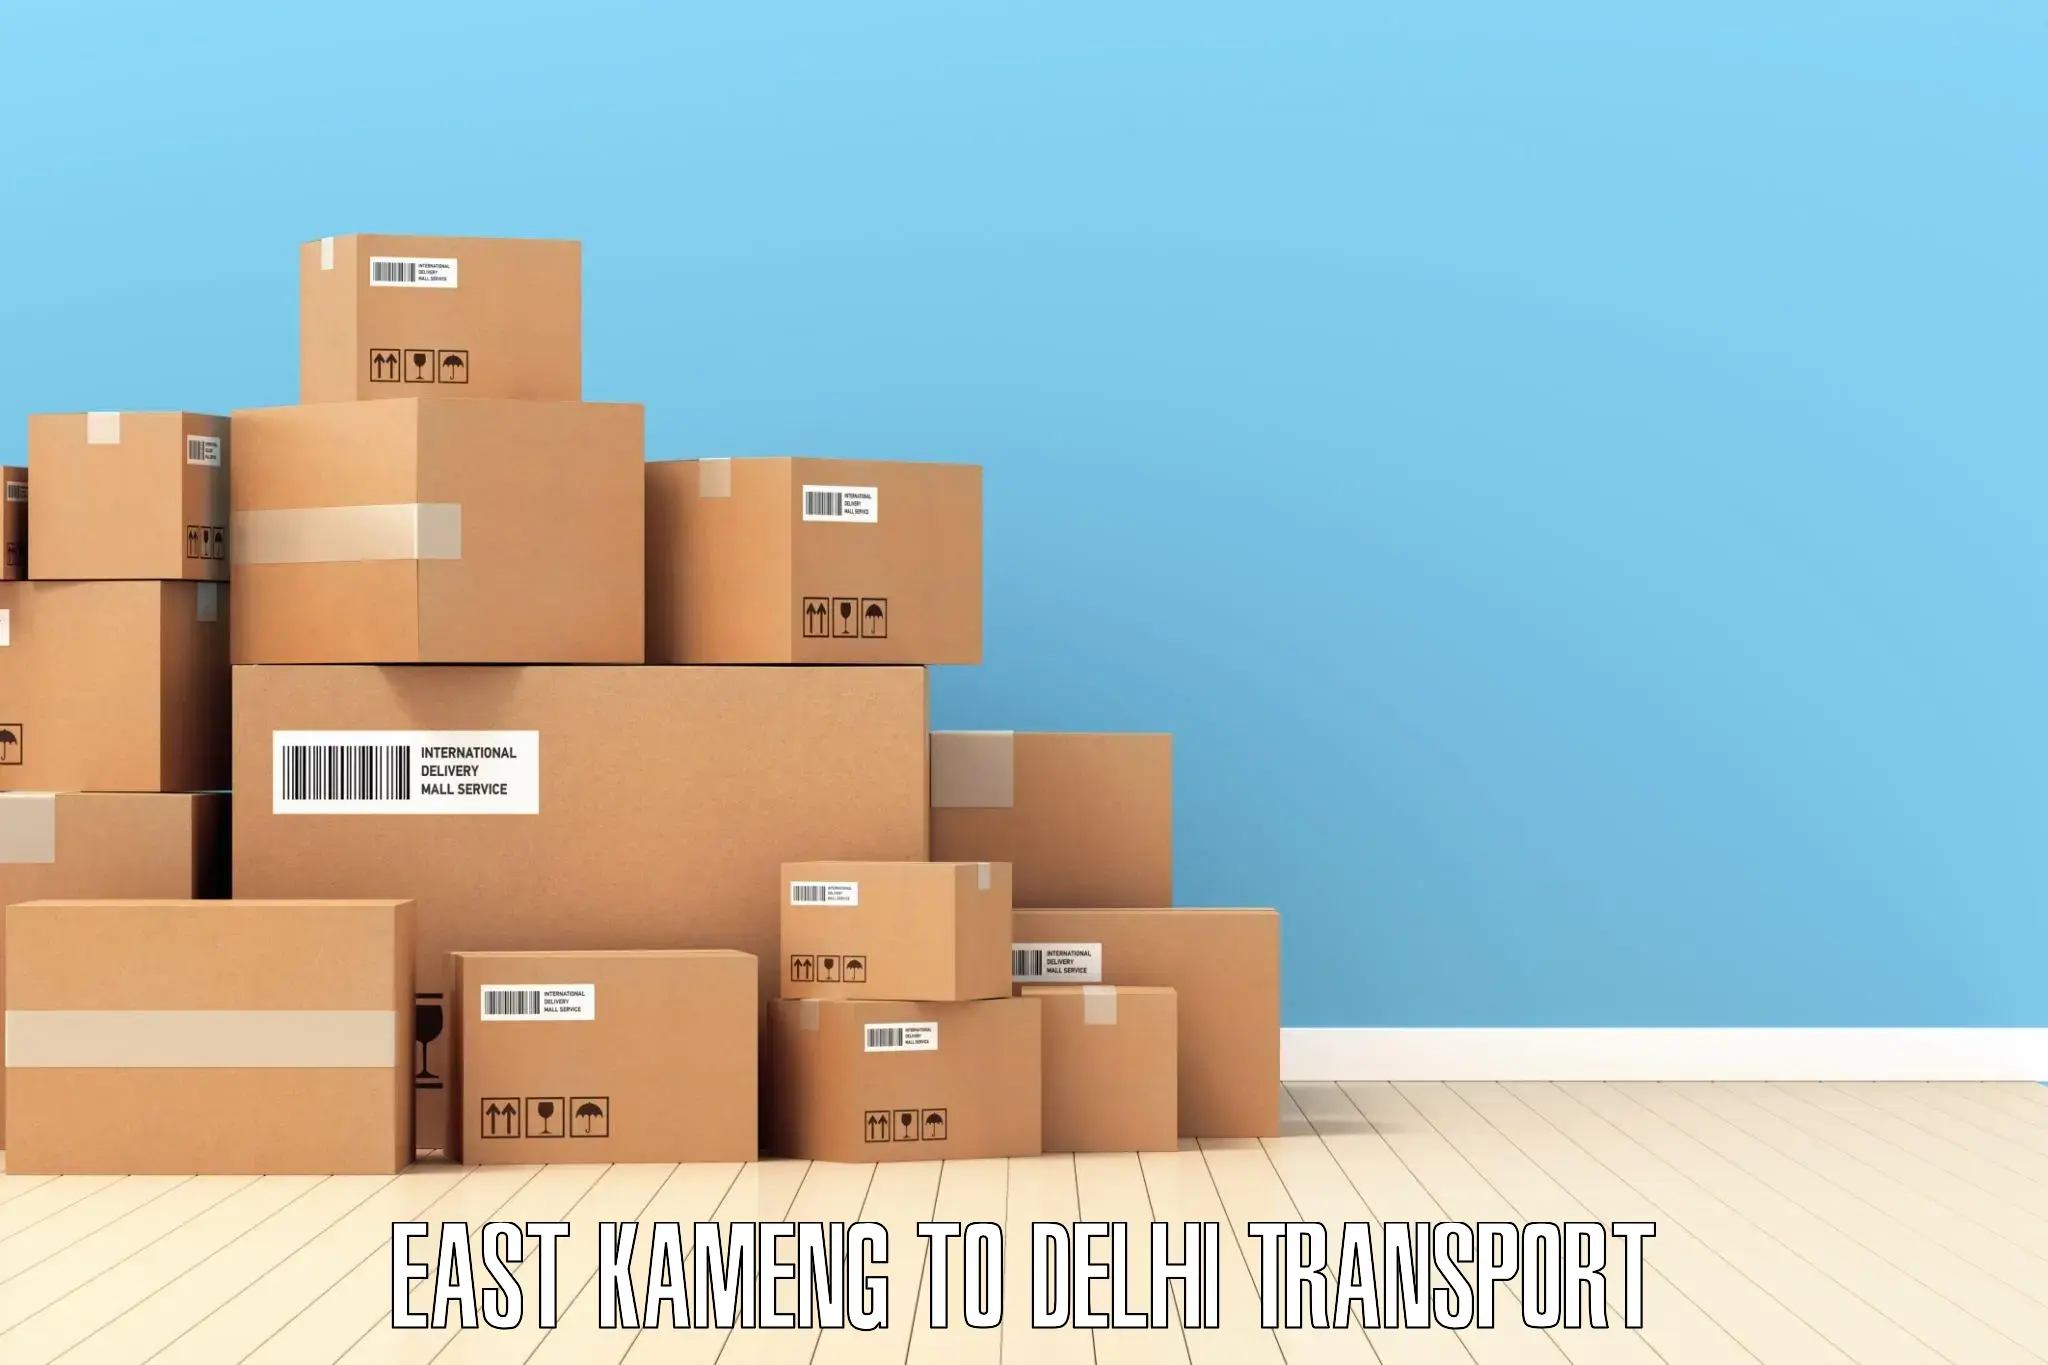 Online transport service East Kameng to Sansad Marg